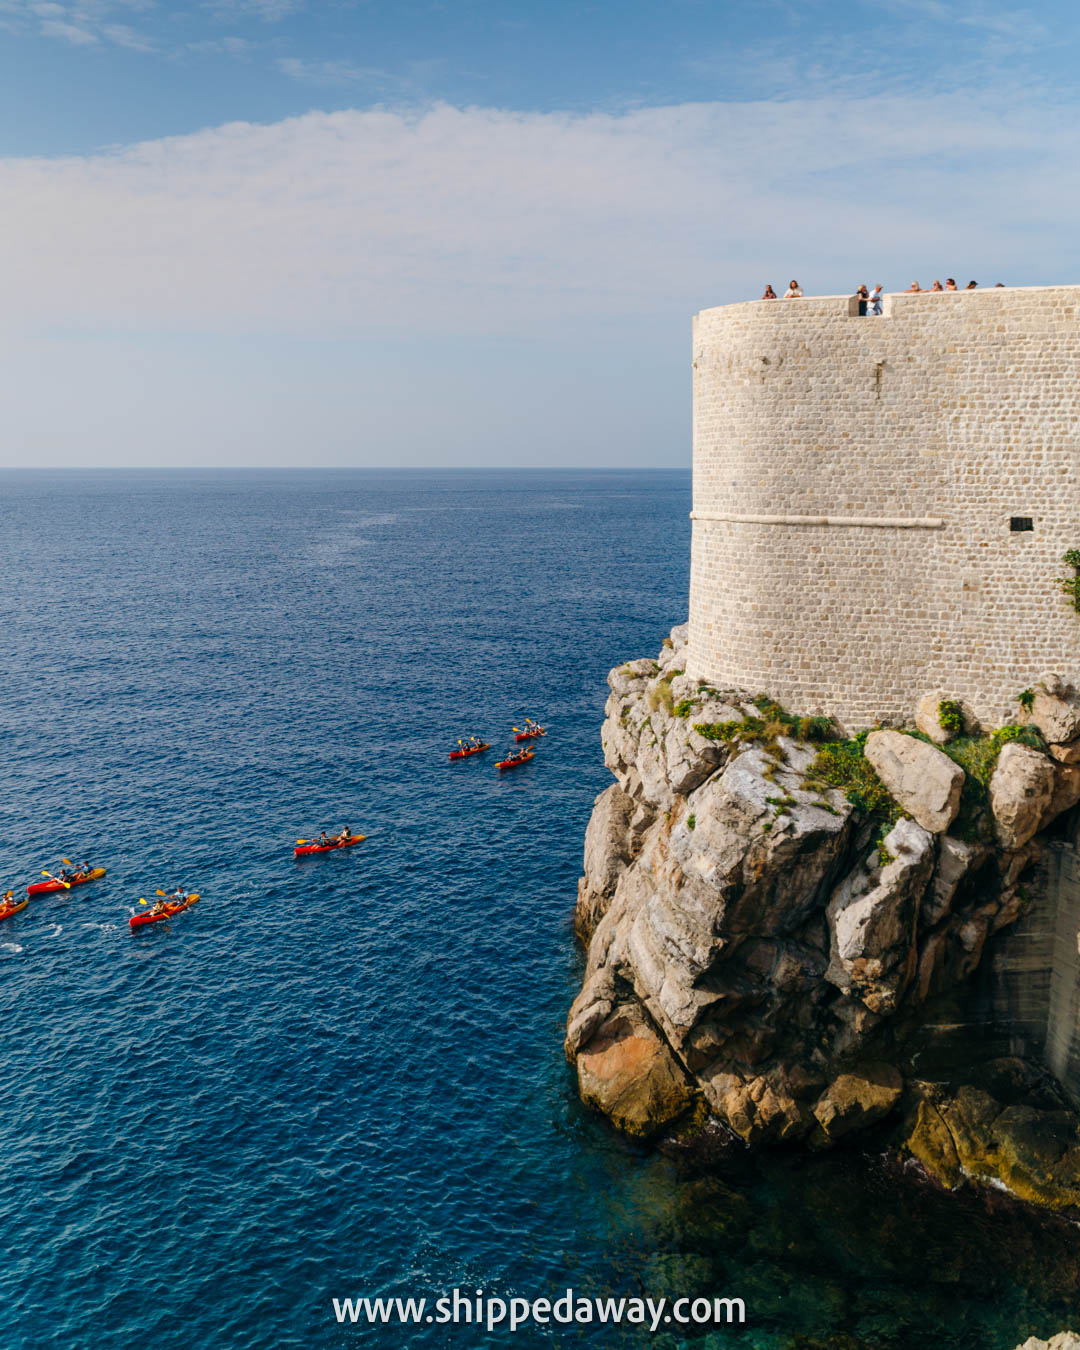 Sea kayaking Dubrovnik